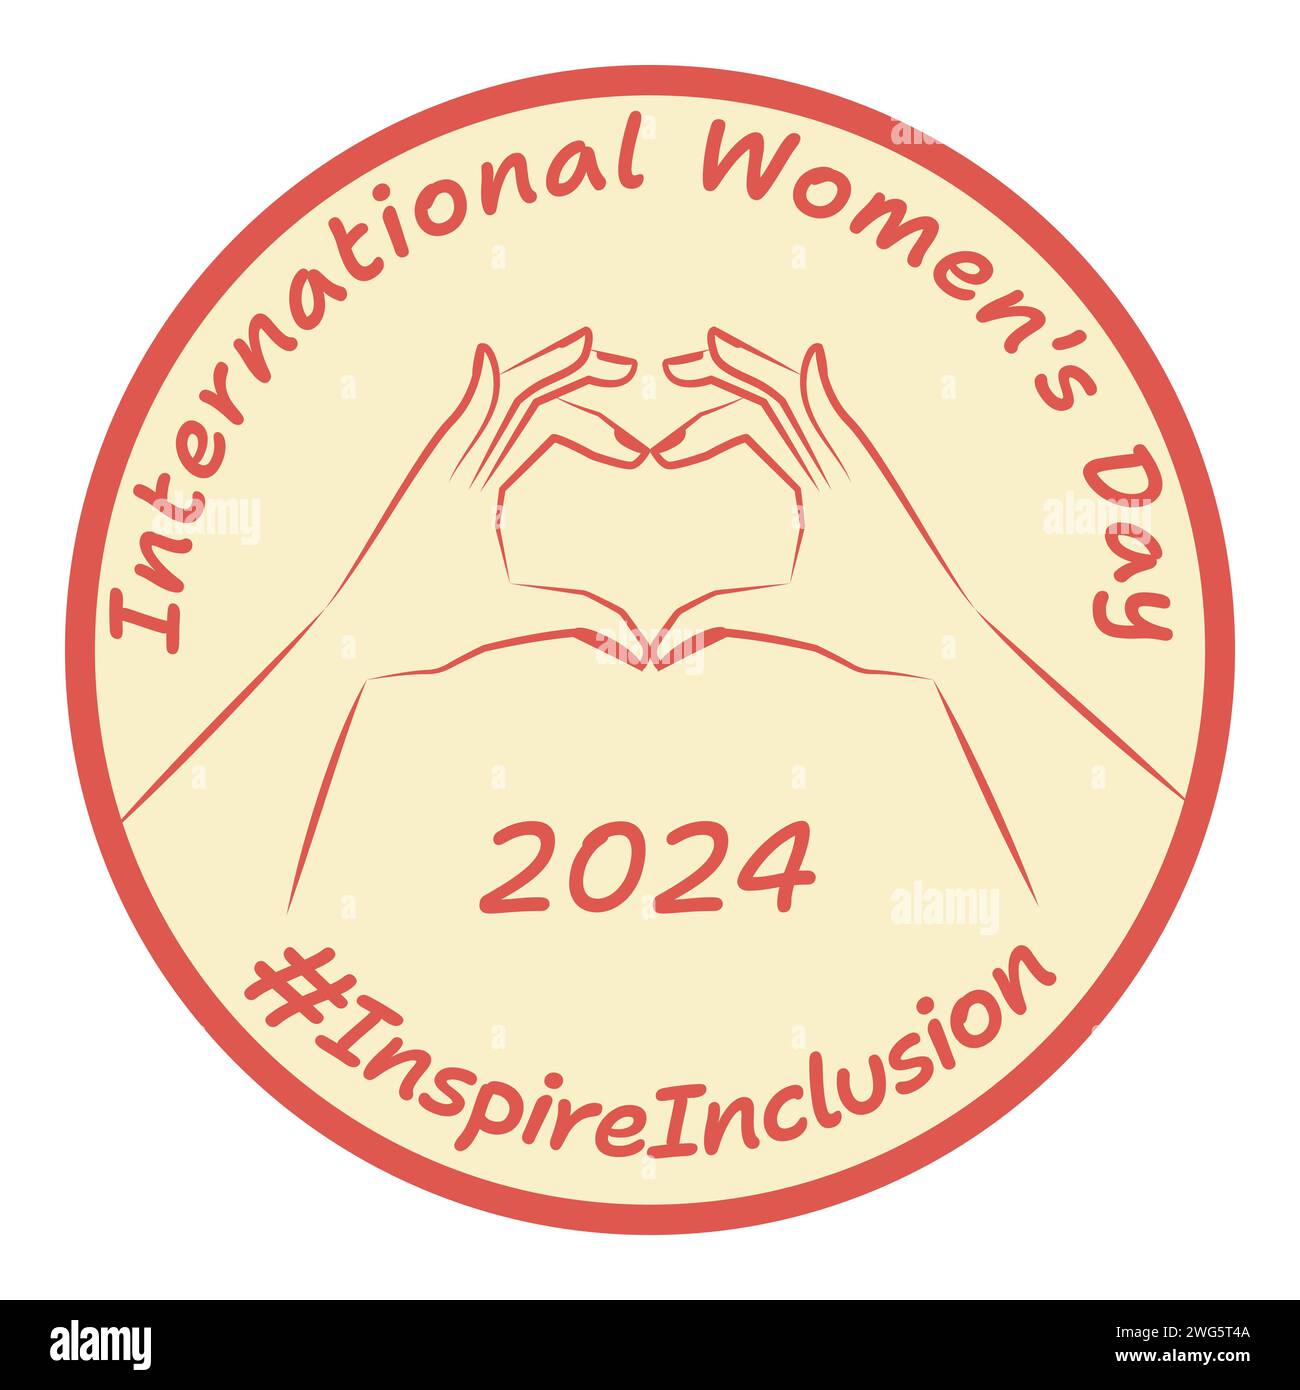 Forme de coeur et texte. Inspirez l'inclusivité. Journée internationale de la femme 2024. Style rétro. #Inspirationinclusion emblème, logo, badge design. Vecteur illus Illustration de Vecteur